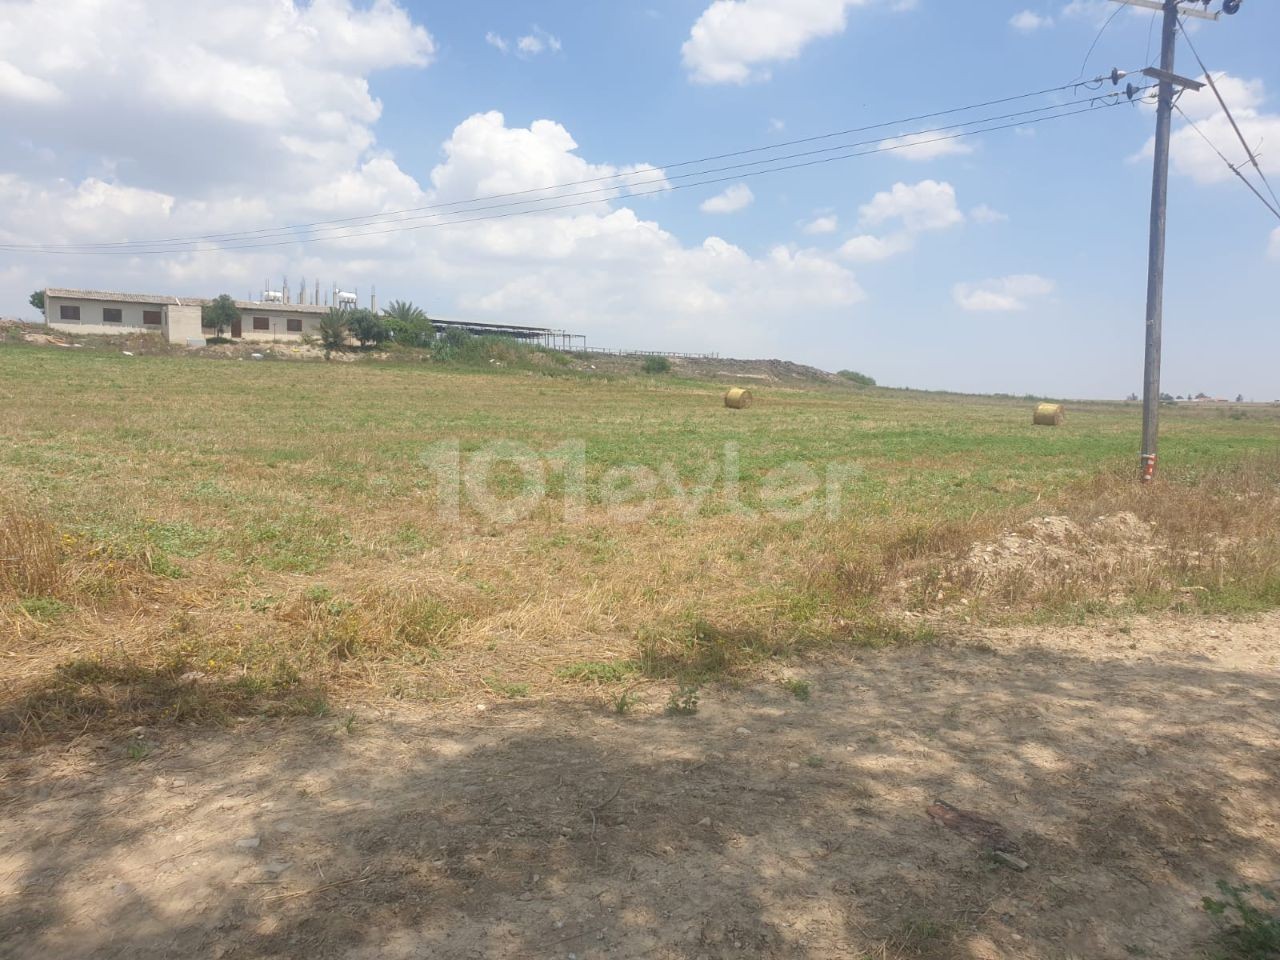 Zu verkaufendes Grundstück in Nikosia, Region Meric, offen für Entwicklung